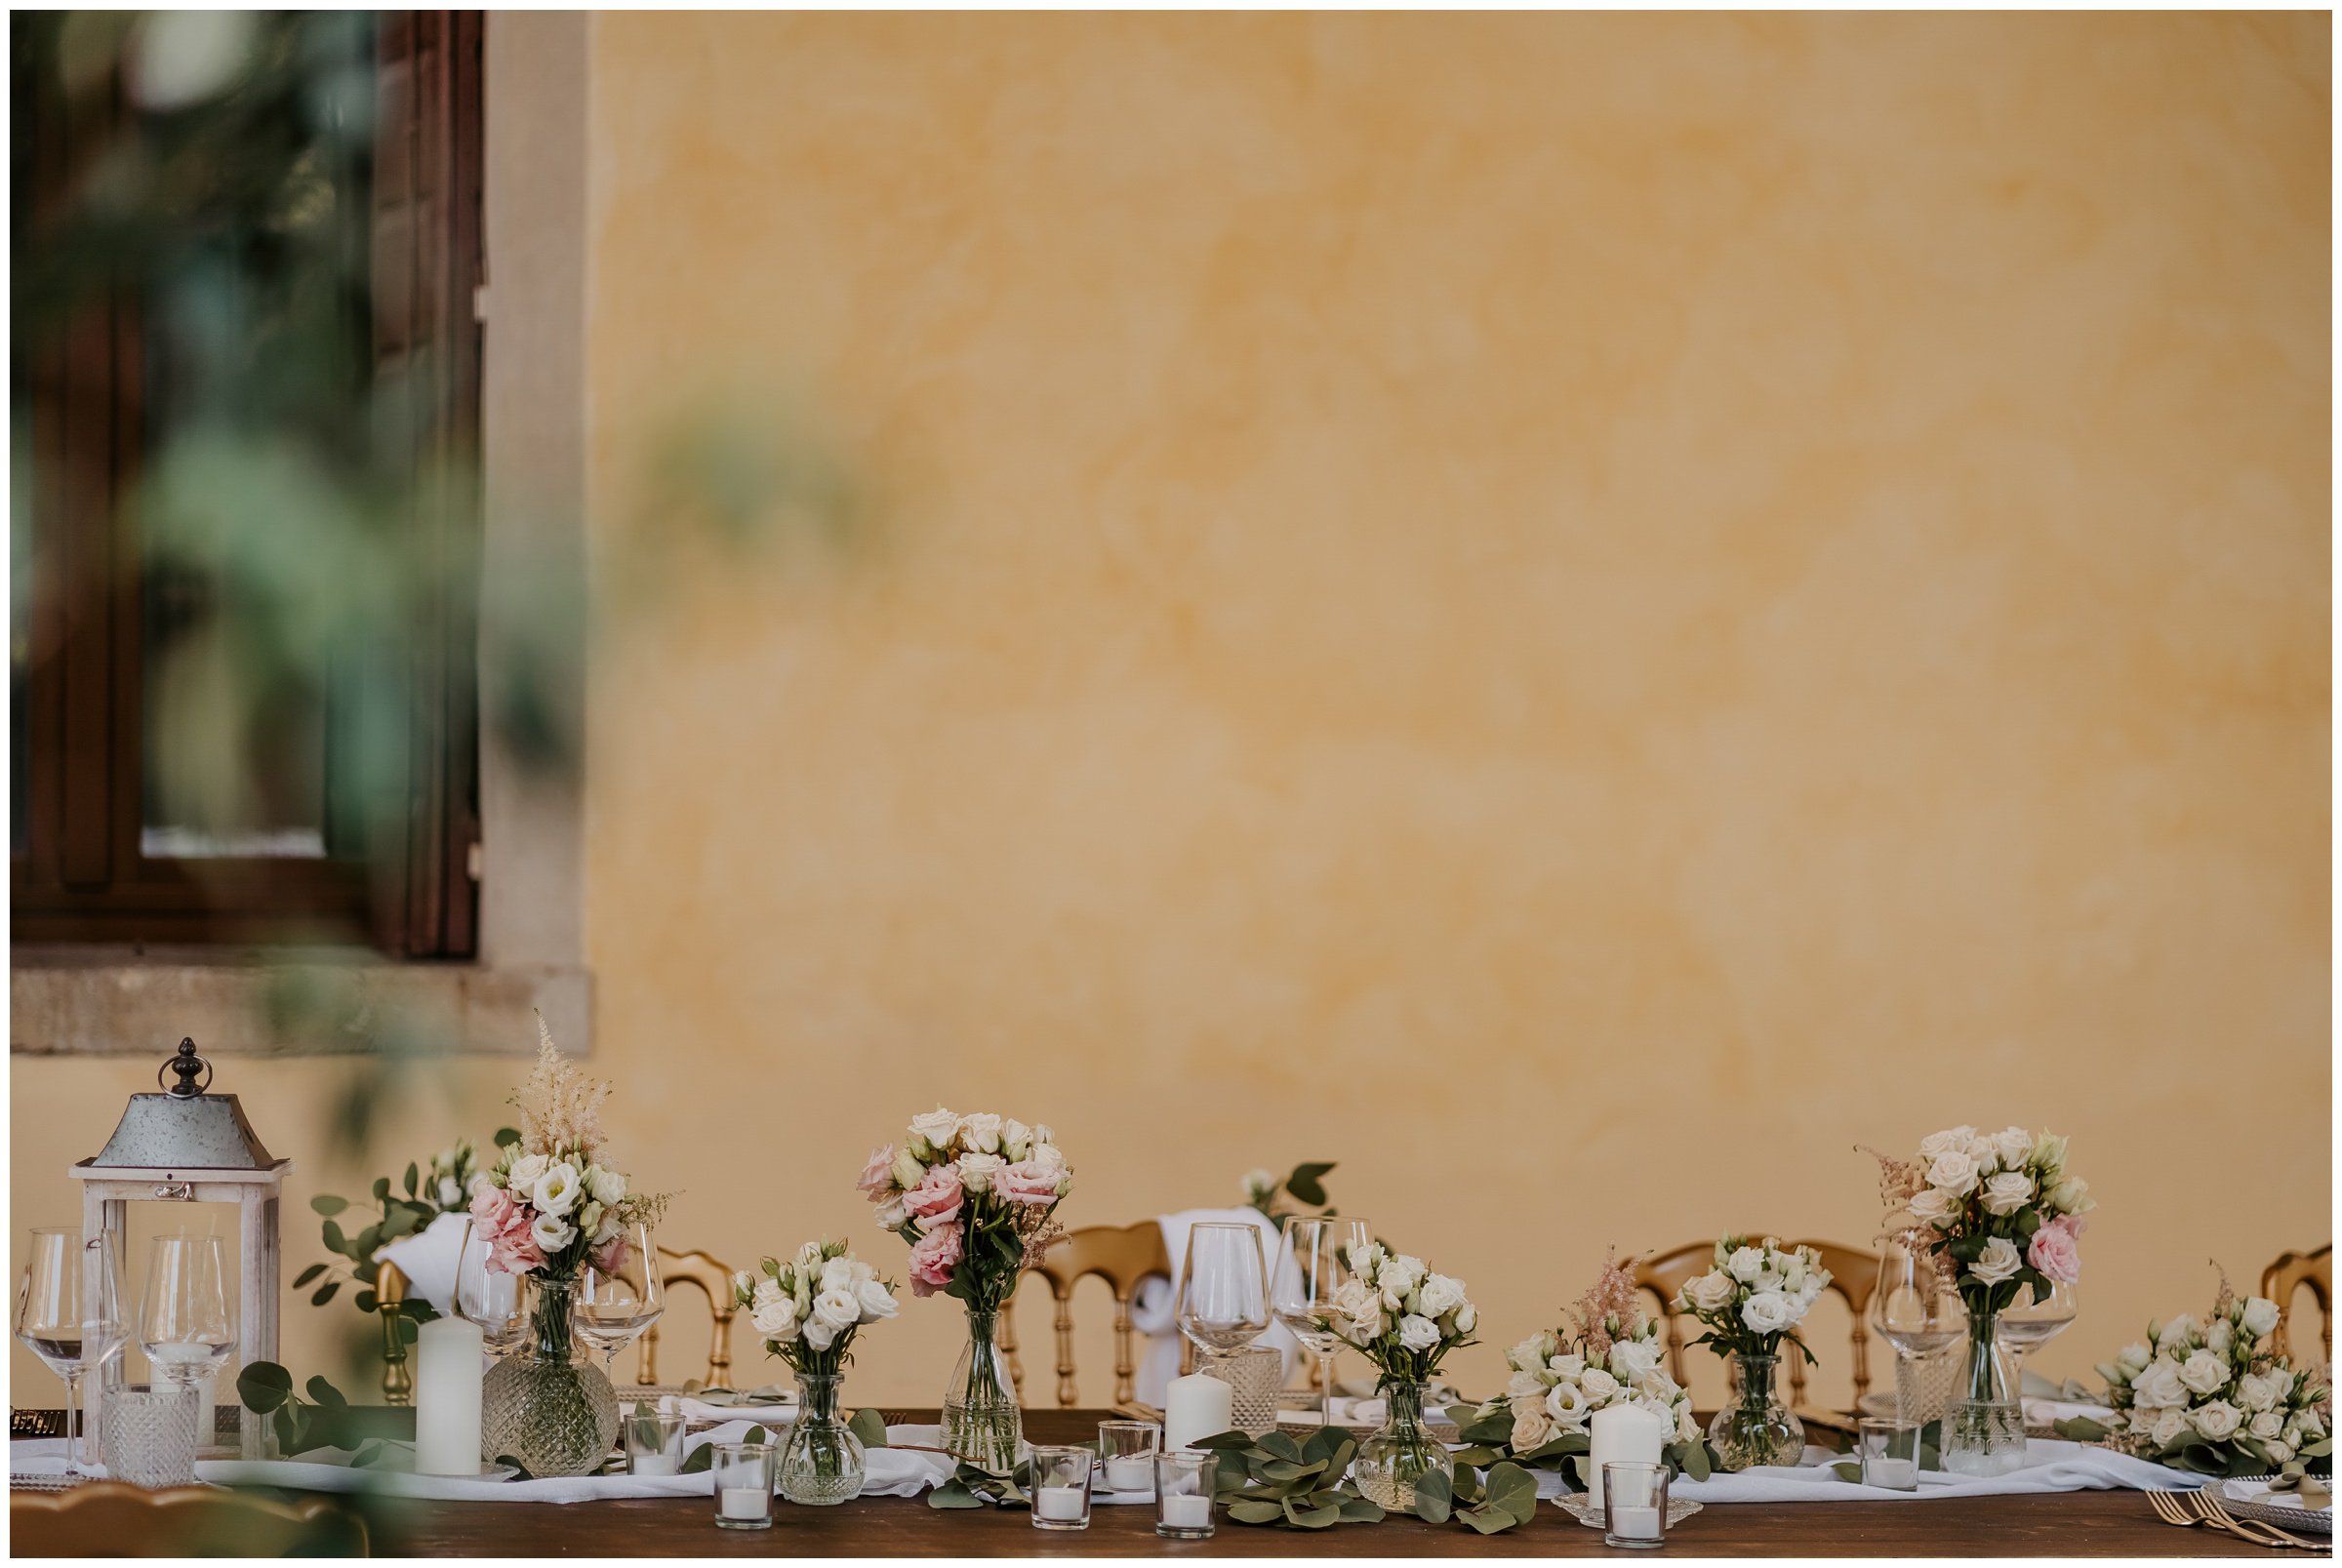 Matrimonio-villa-foscarini-cornaro-fotografo-matrimonio-treviso-fotografo-matrimonio-venezia-6.jpg